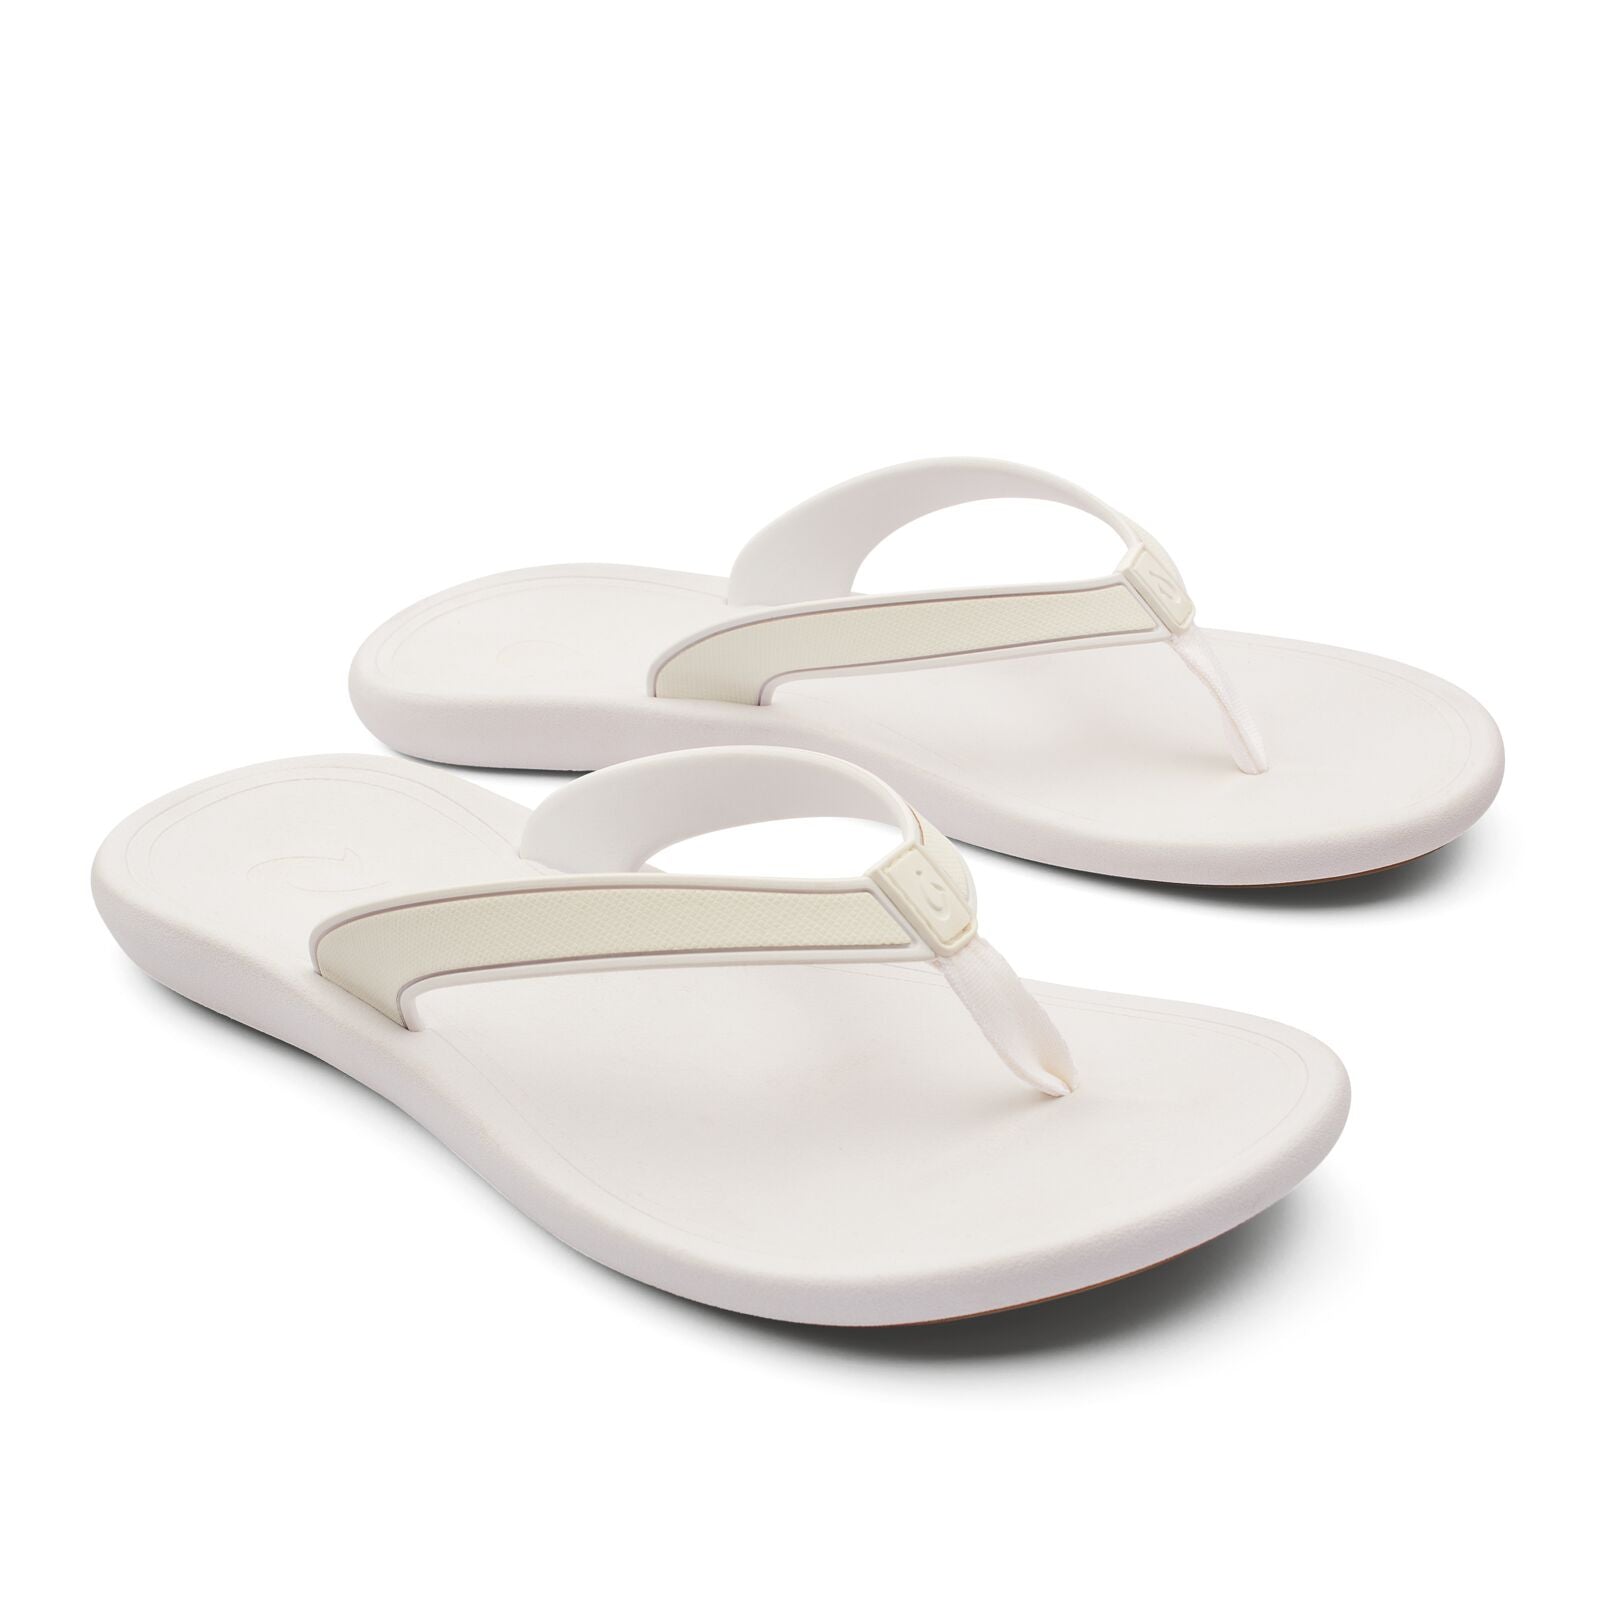 Olukai Kapehe Womens Sandal 4R4R-White-White 6